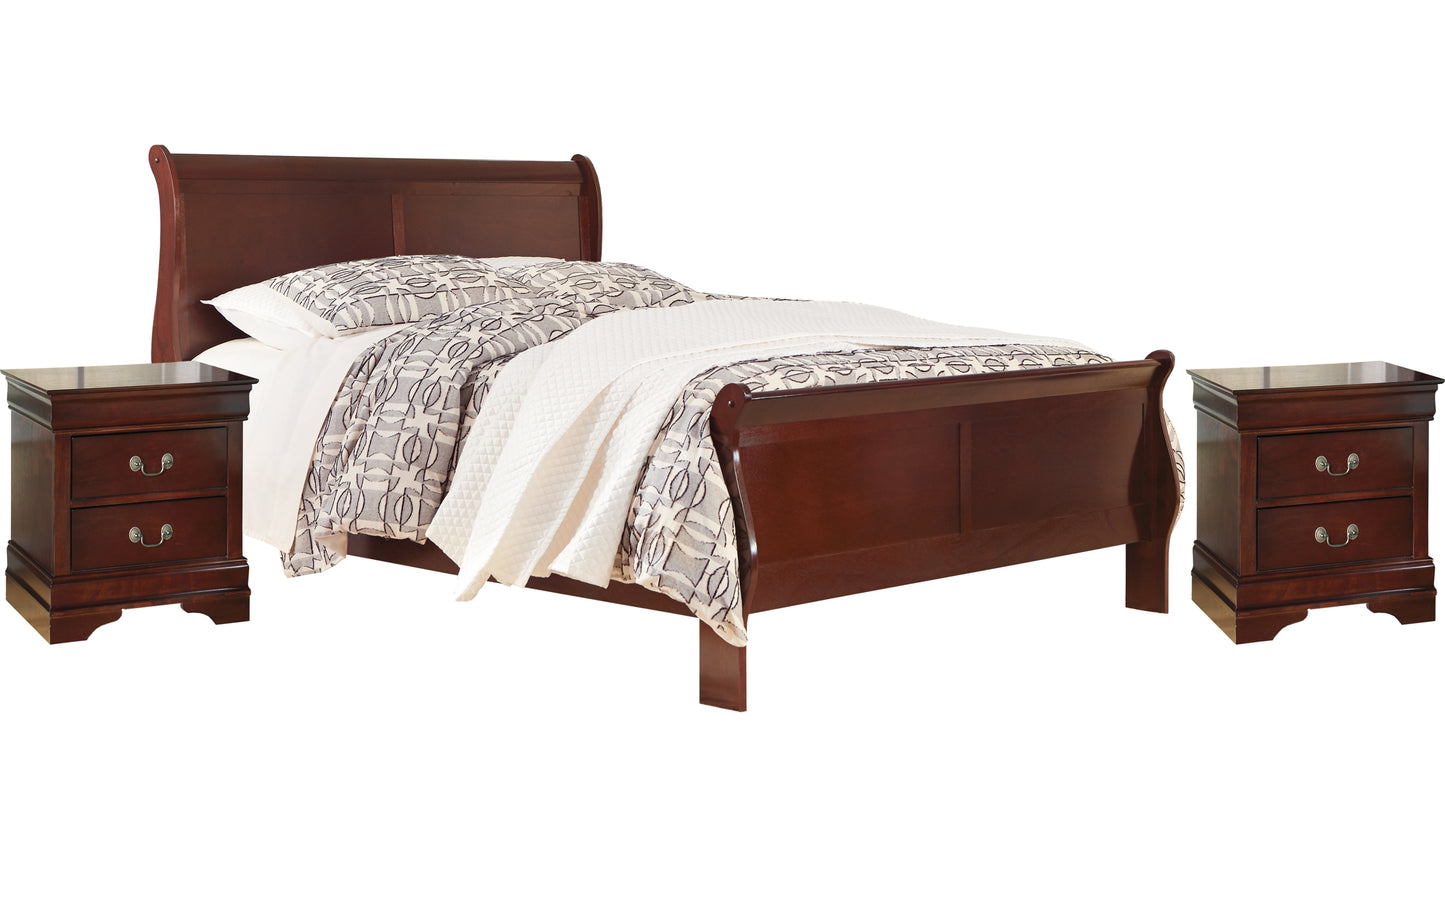 Alisdair Queen Sleigh Bed with 2 Nightstands JB's Furniture  Home Furniture, Home Decor, Furniture Store